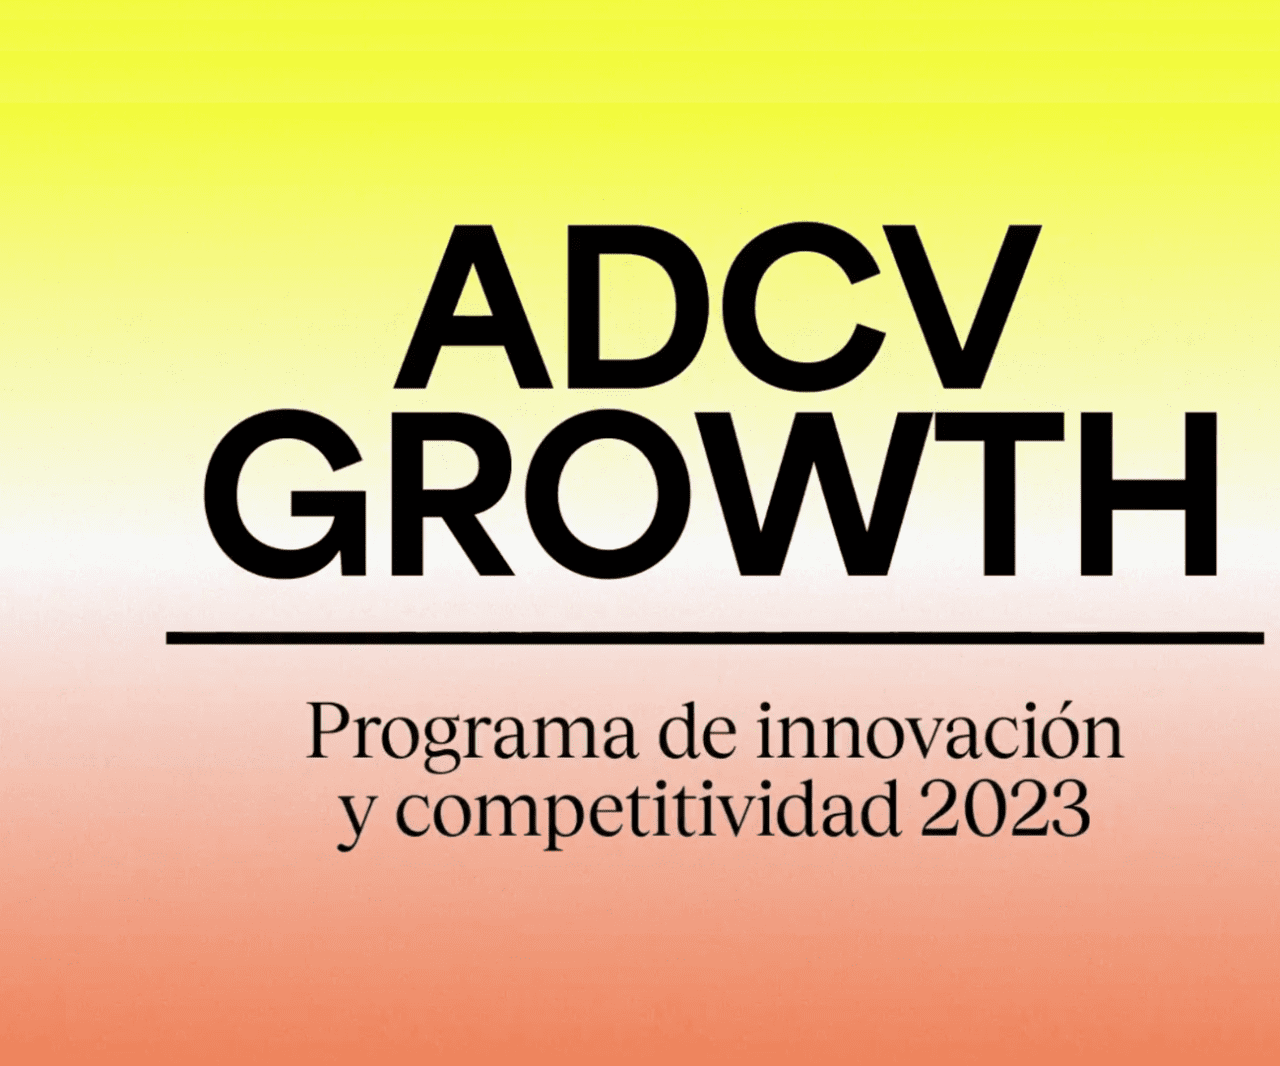 Clausura ADCV Growth: La profesión del diseño, a debate